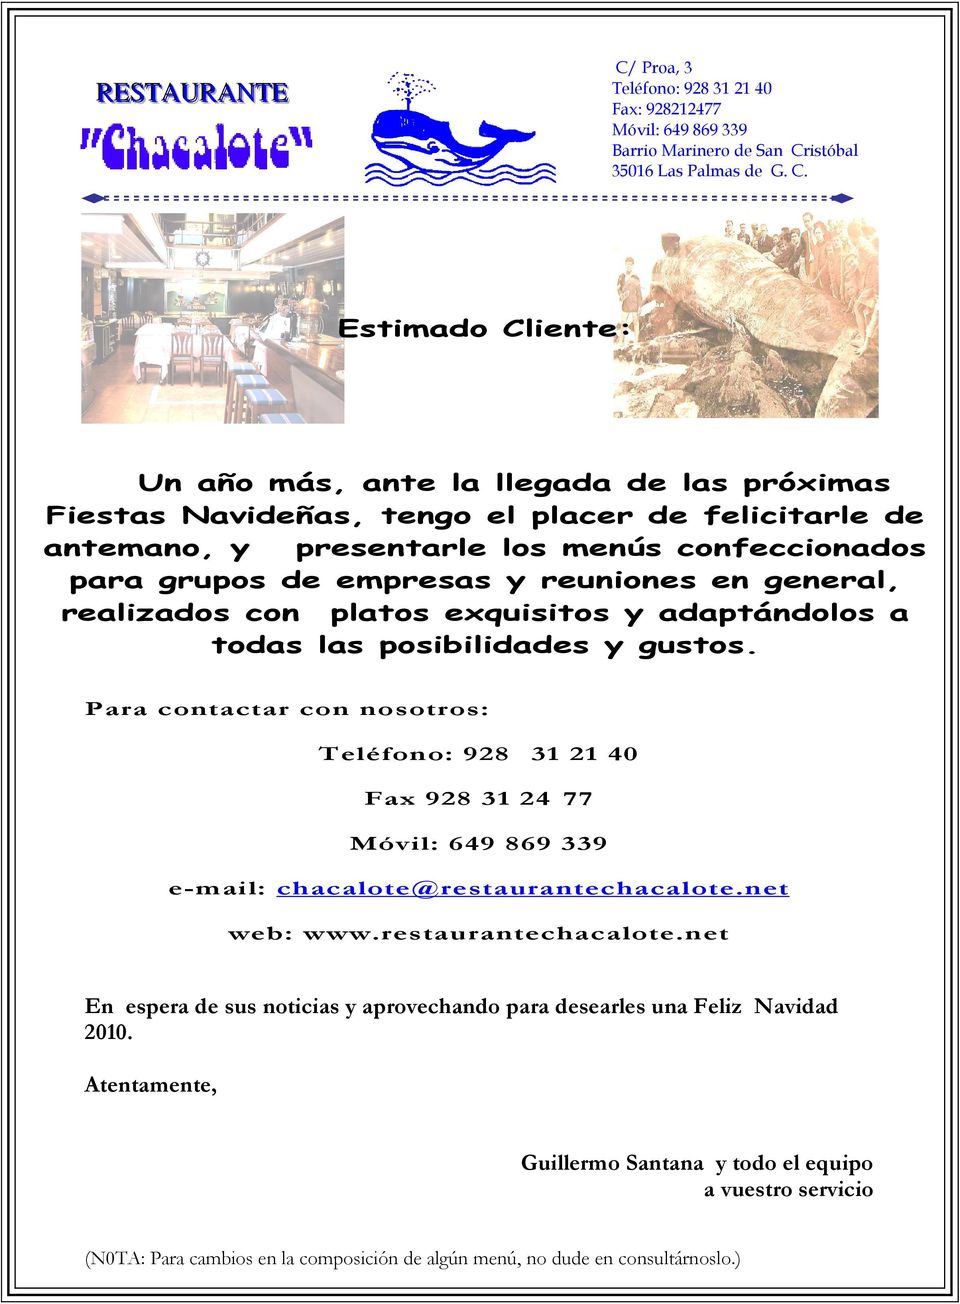 Para contactar con nosotros: Fax 928 31 24 77 e-mail: chacalote@restaurantechacalote.